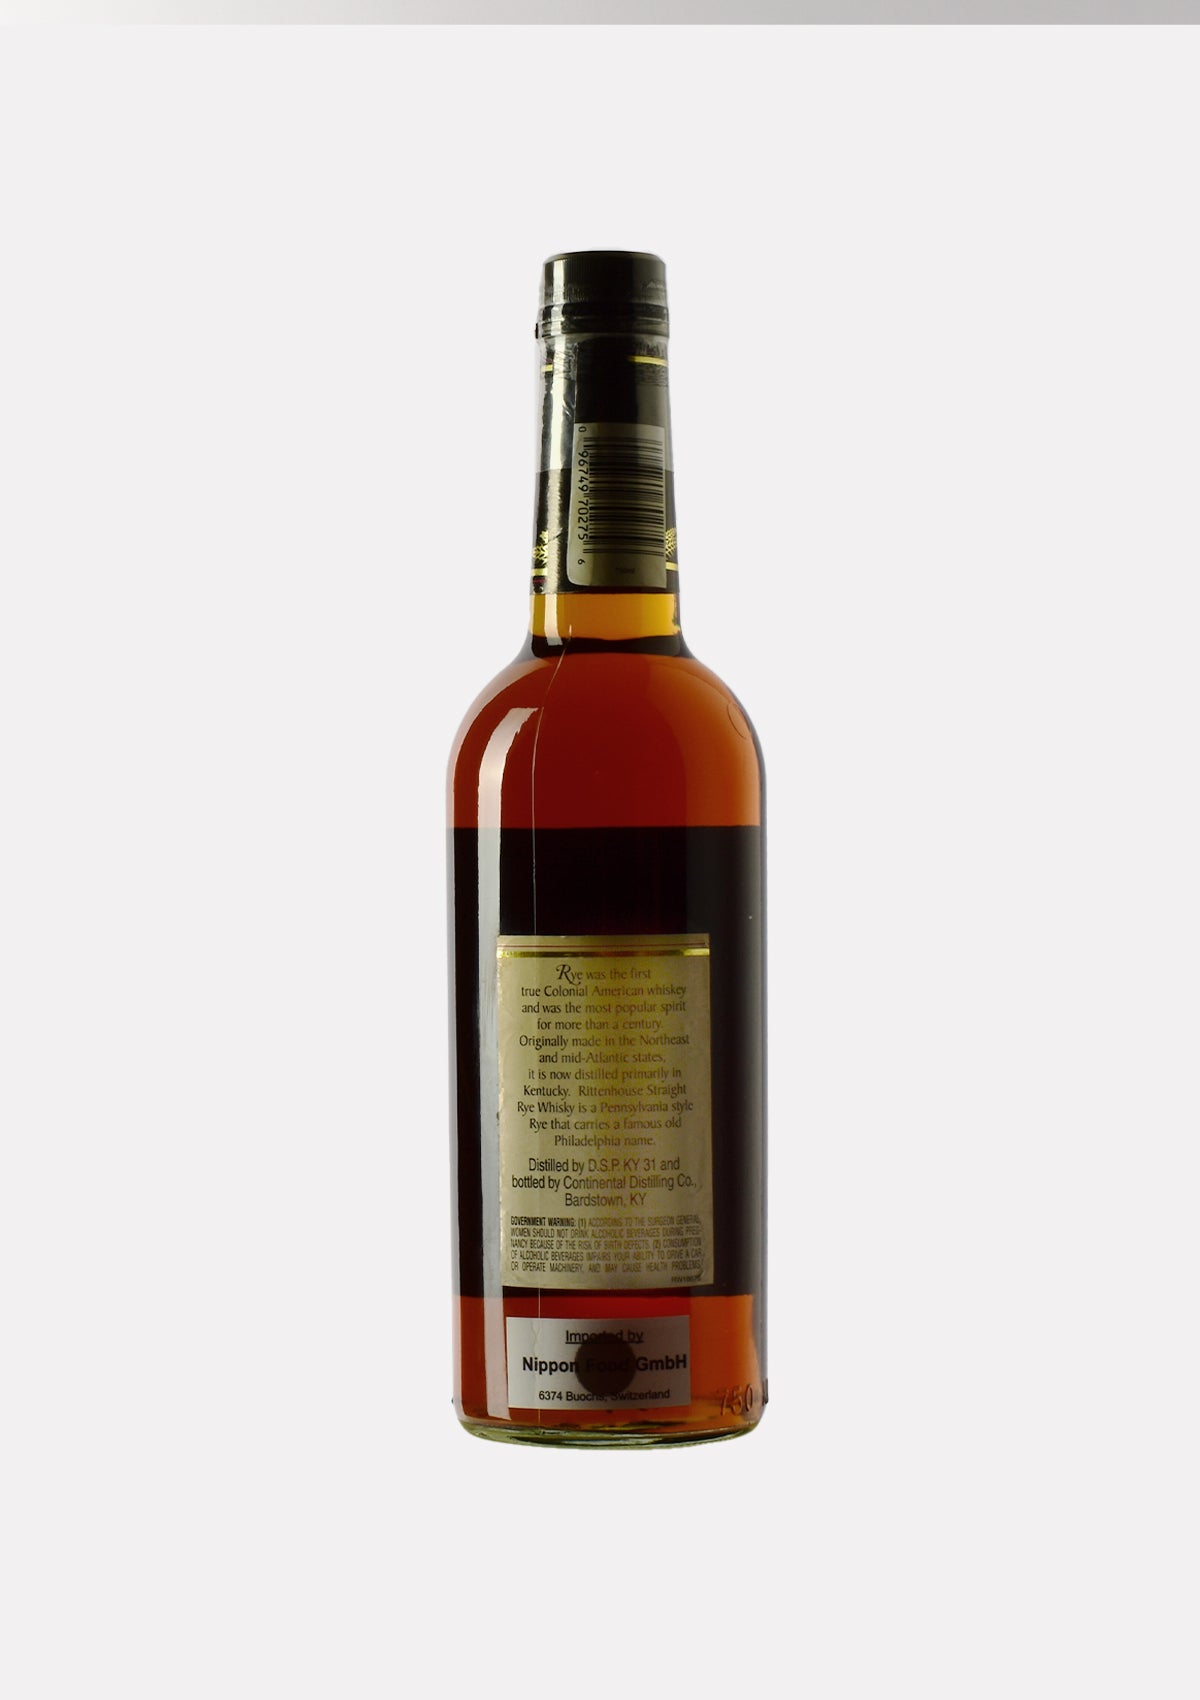 Rittenhouse Straight Rye Whisky 100 Proof Bottled in Bond